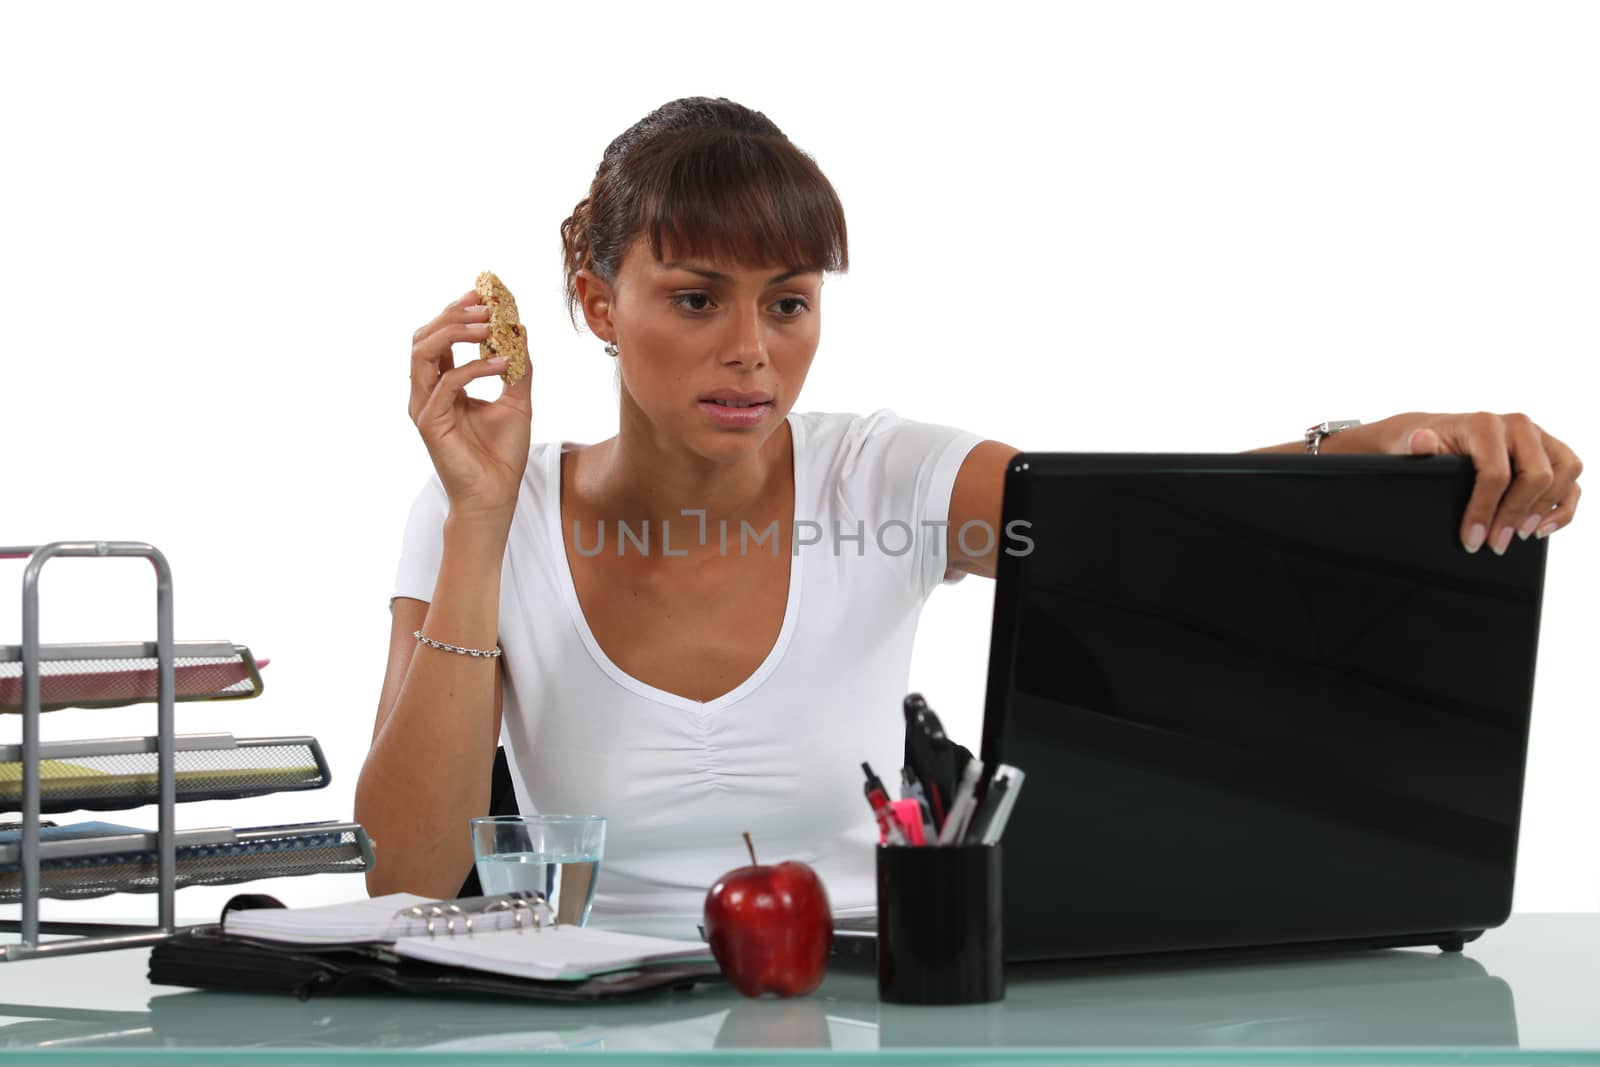 Eating at her desk